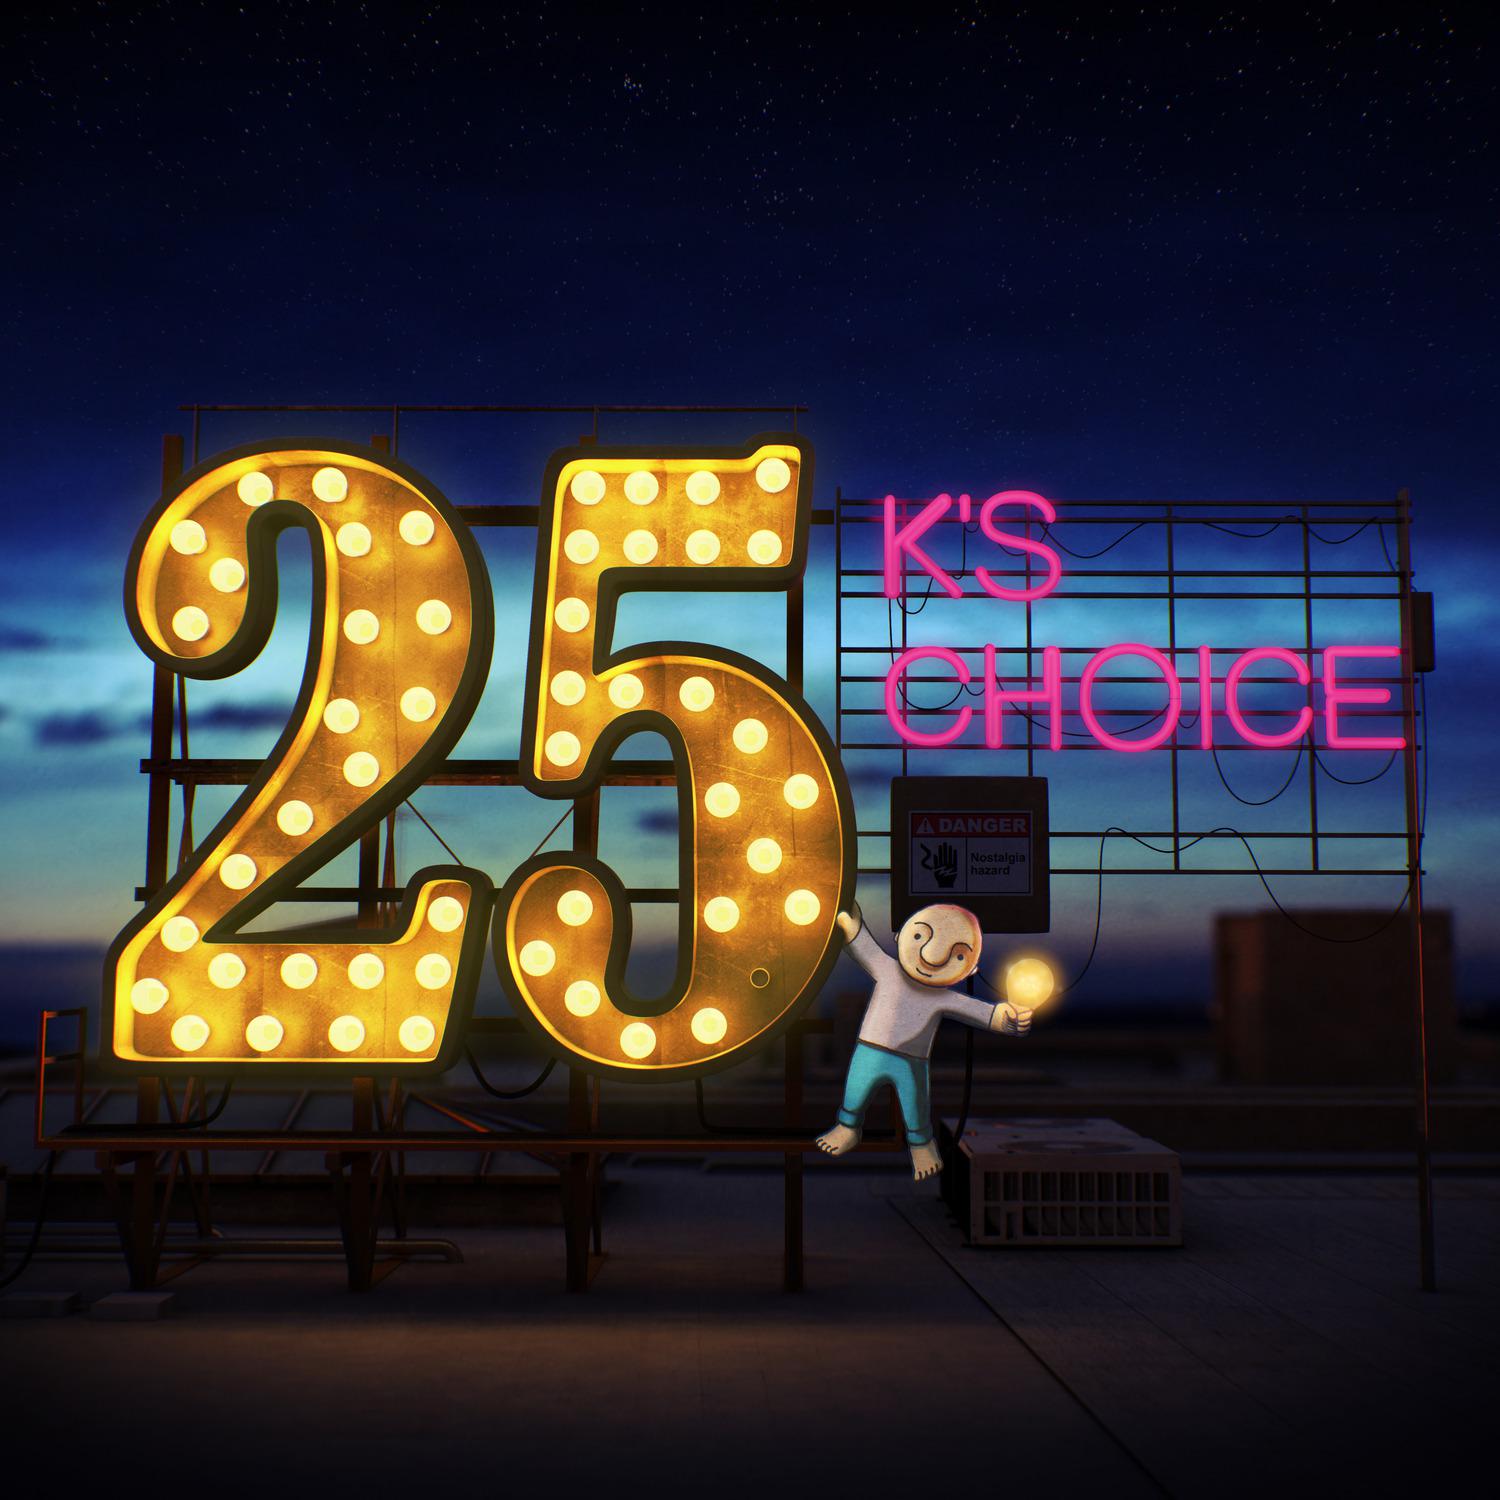 K's Choice - Resonate